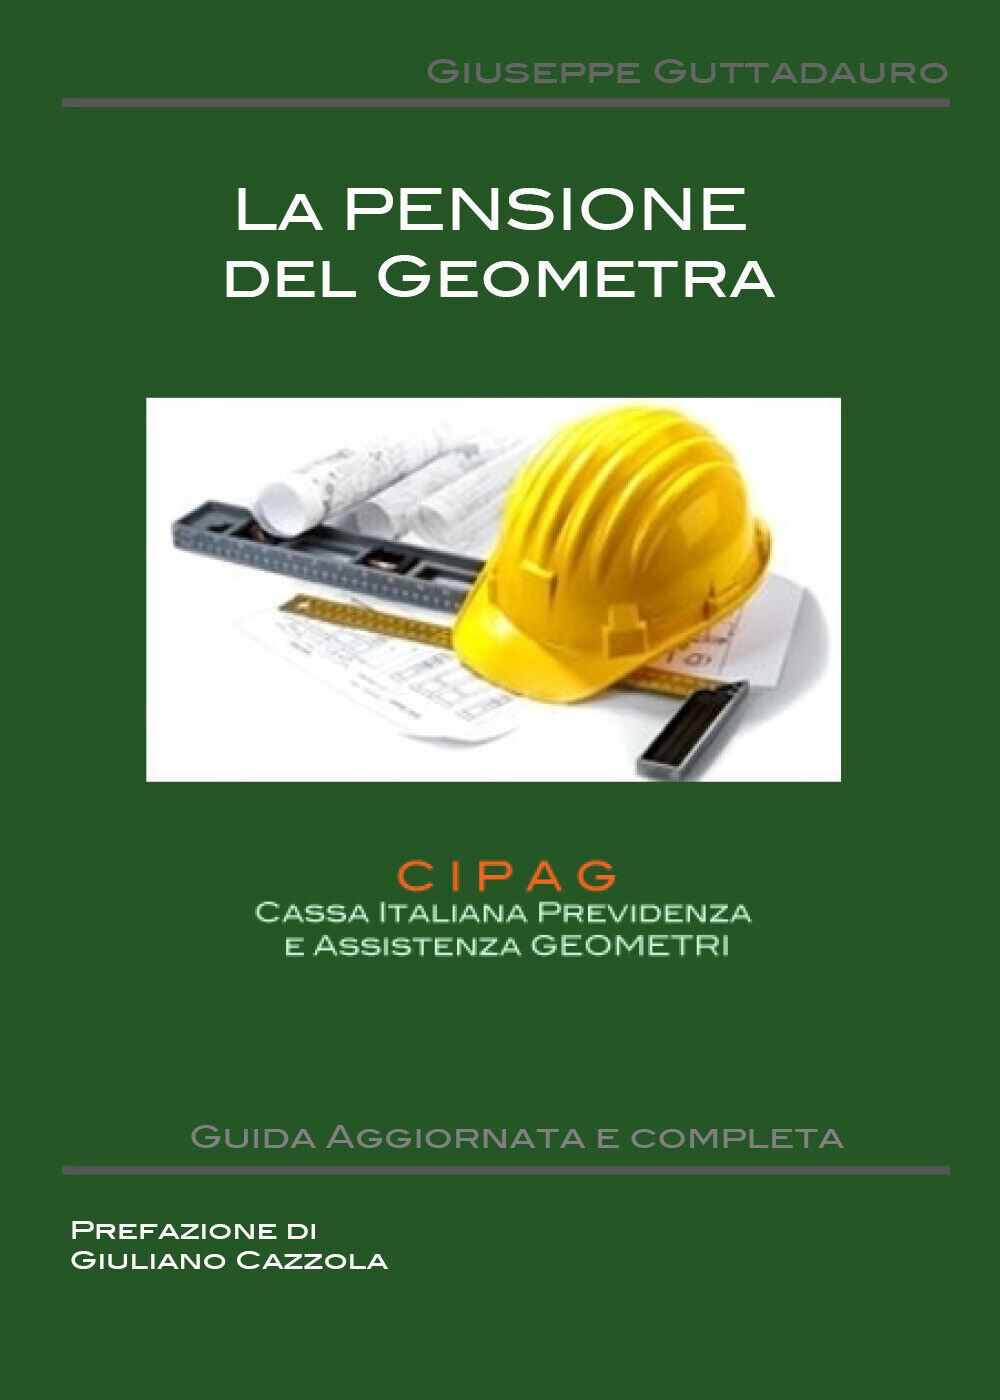 La pensione del Geometra -  Giuseppe Guttadauro,  2018,  Youcanprint